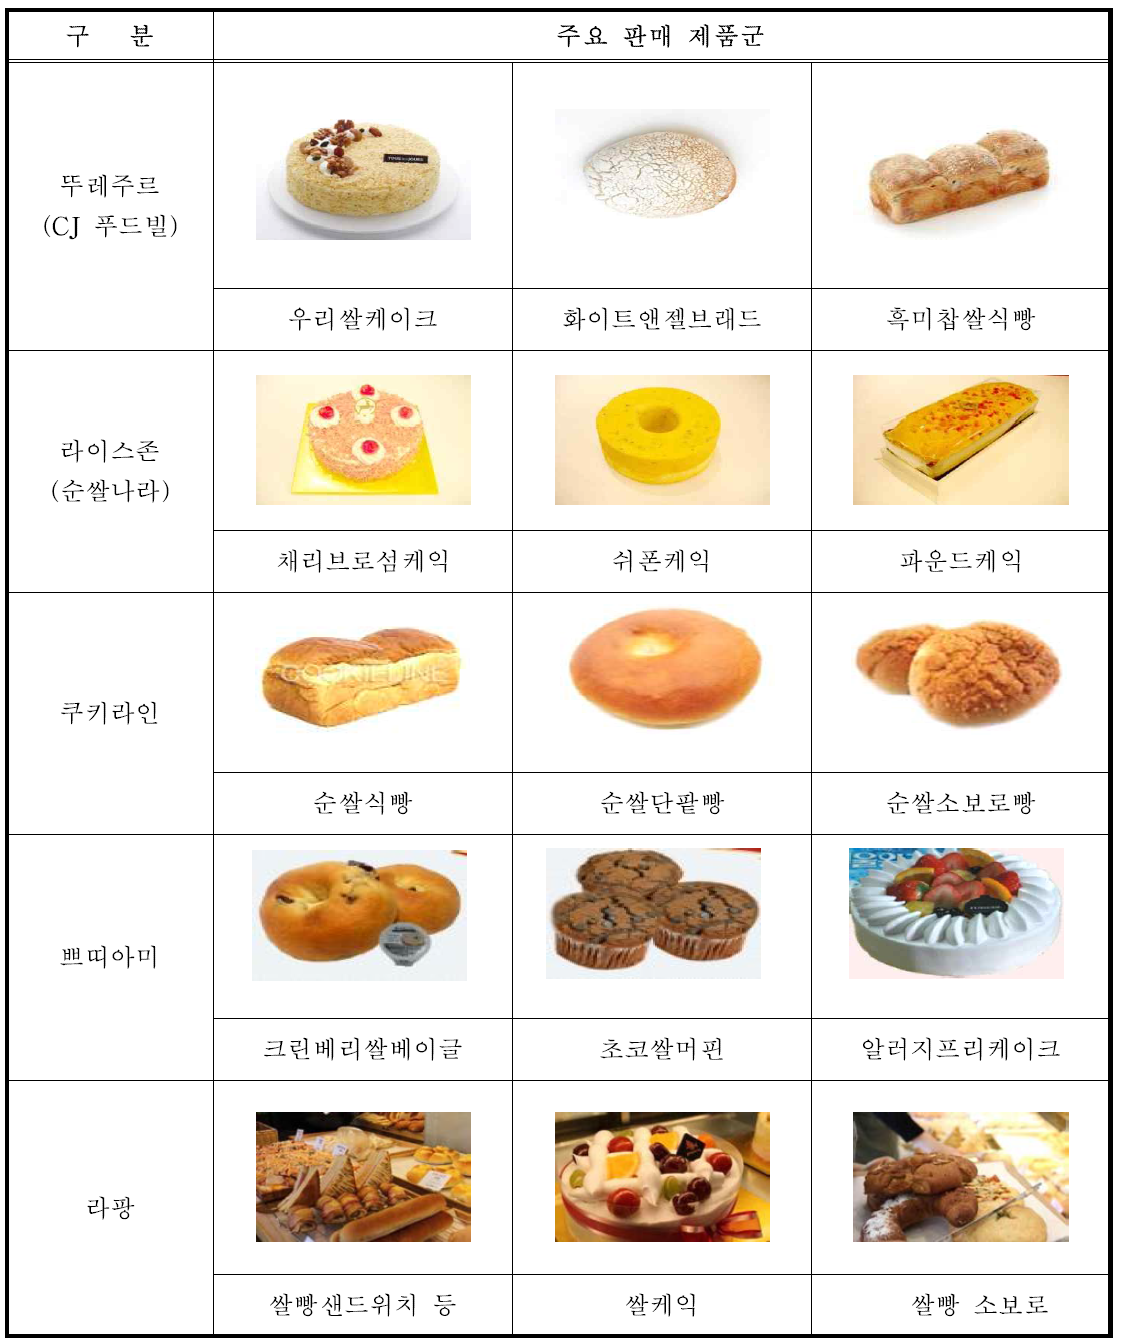 쌀빵 전문매장별 주요 쌀빵제품 현황